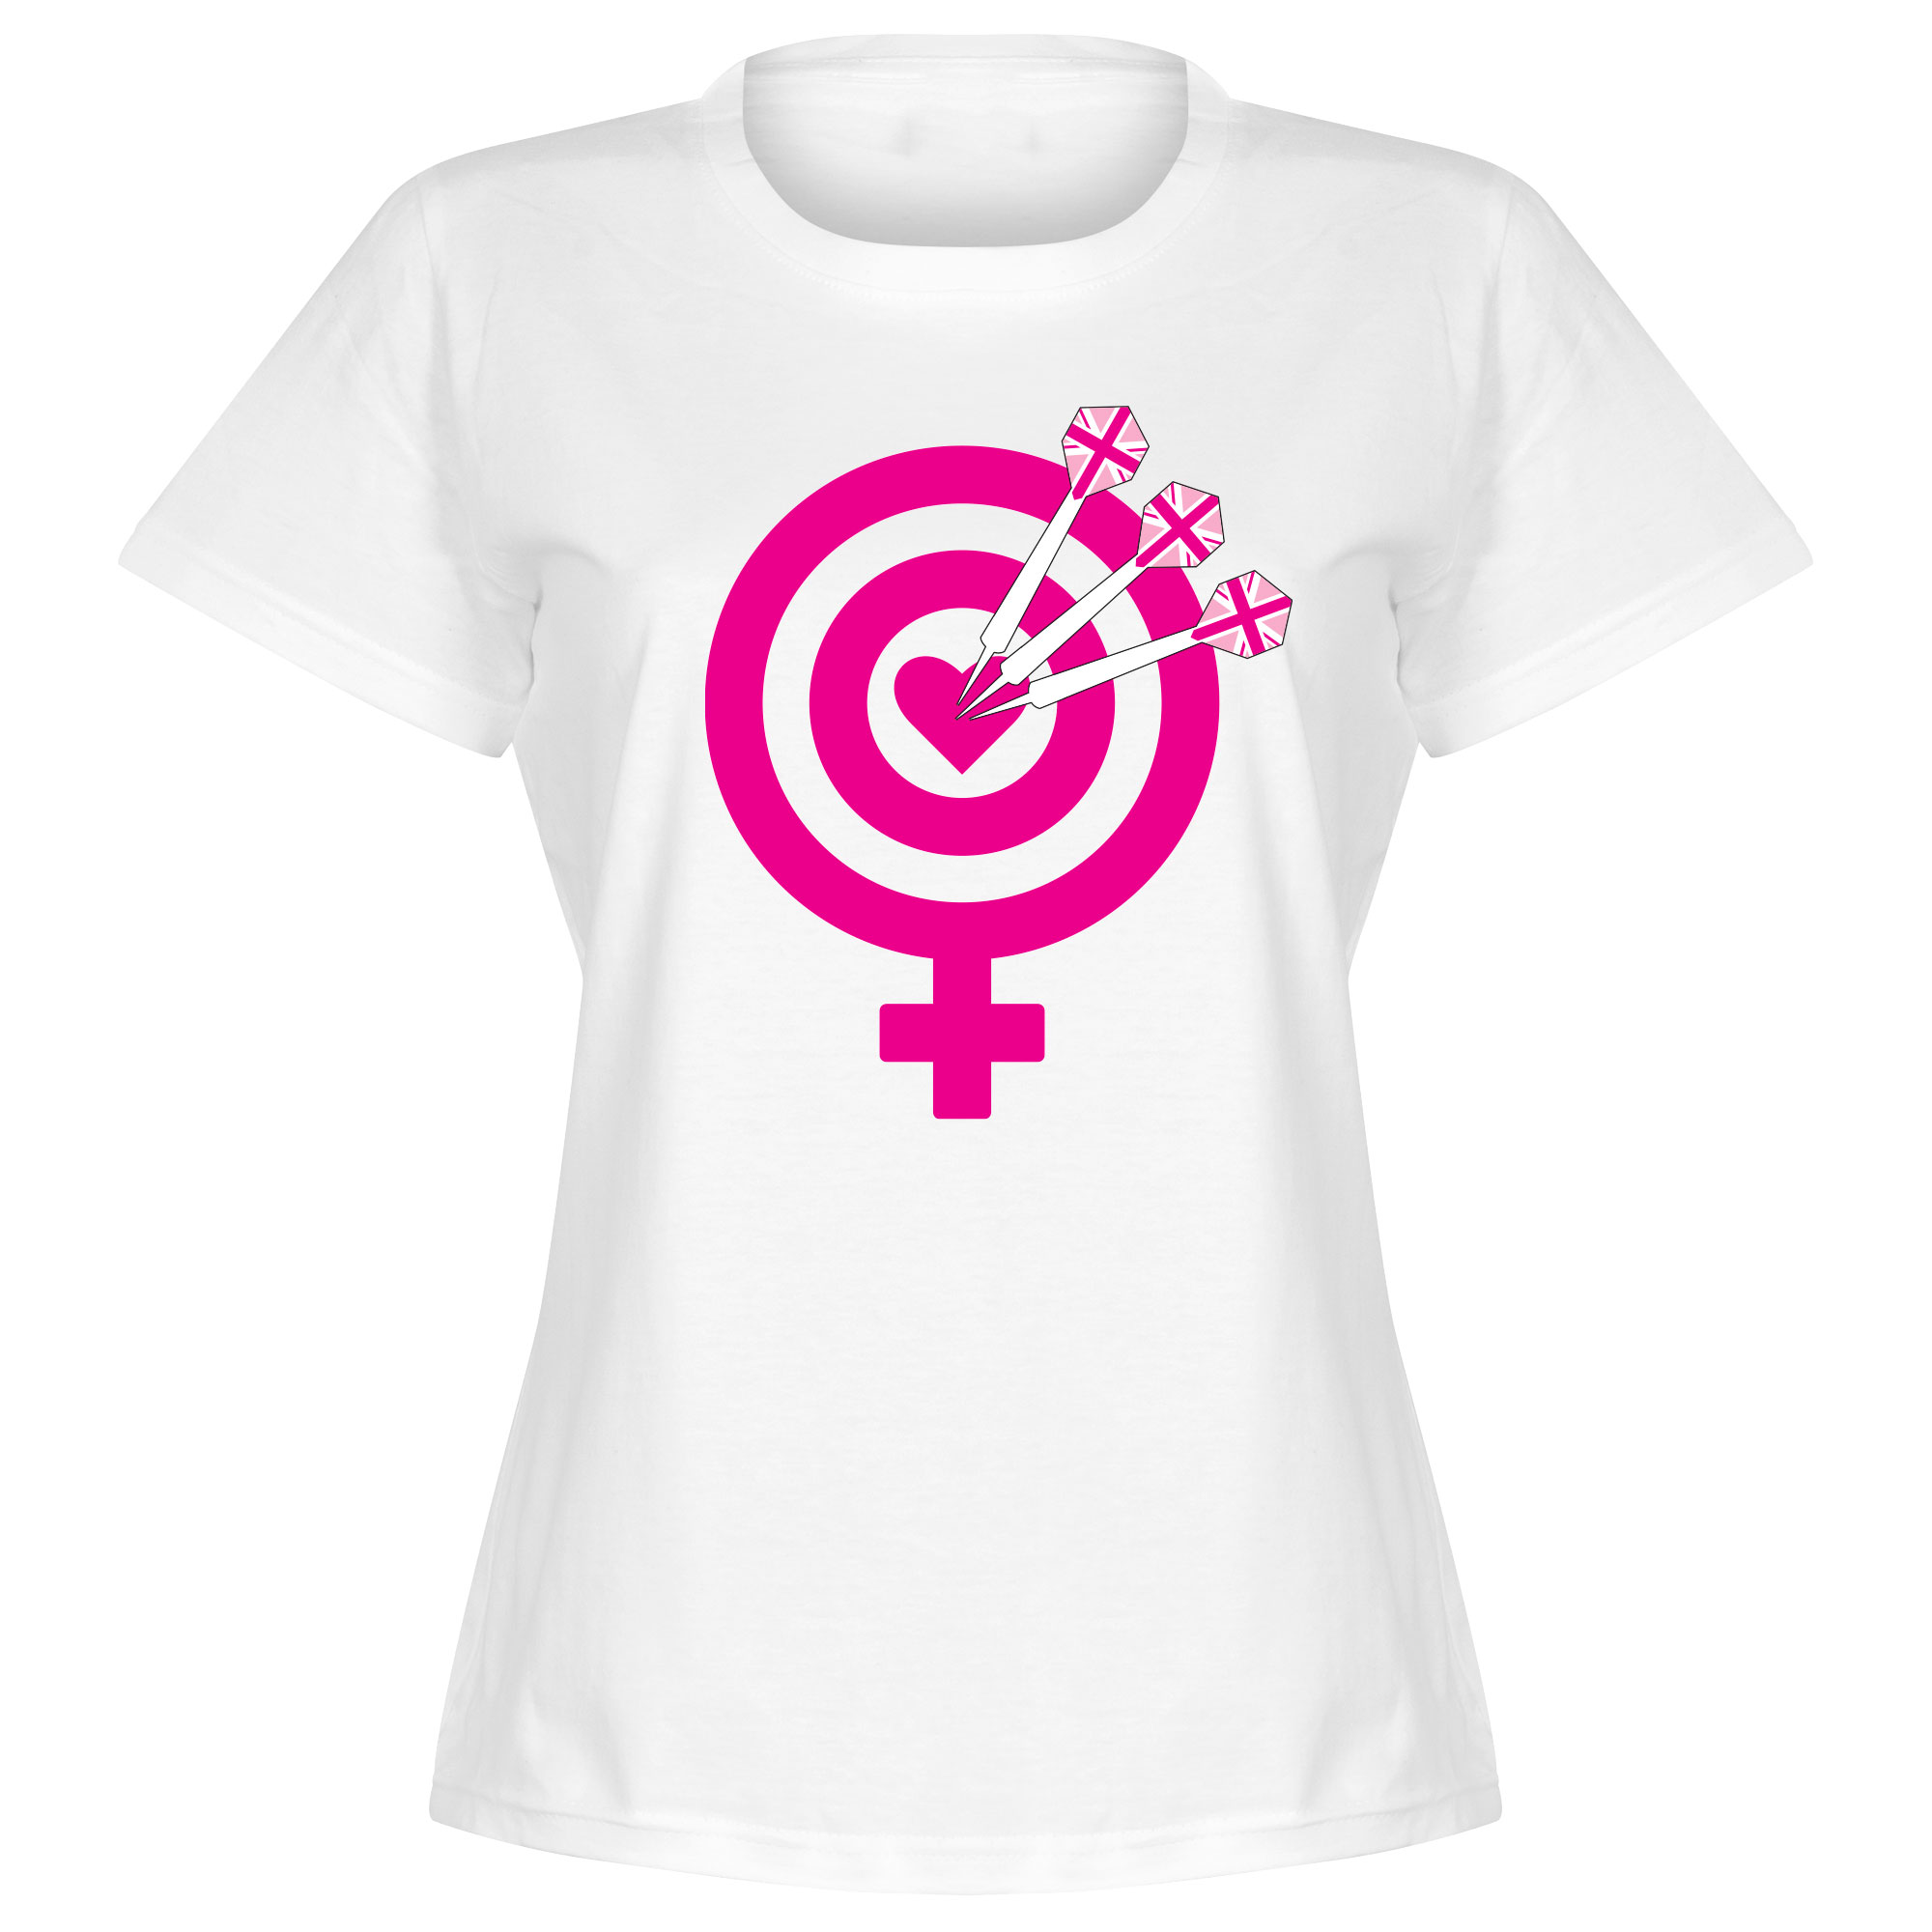 Darts Gender Dames T-Shirt - Wit - M